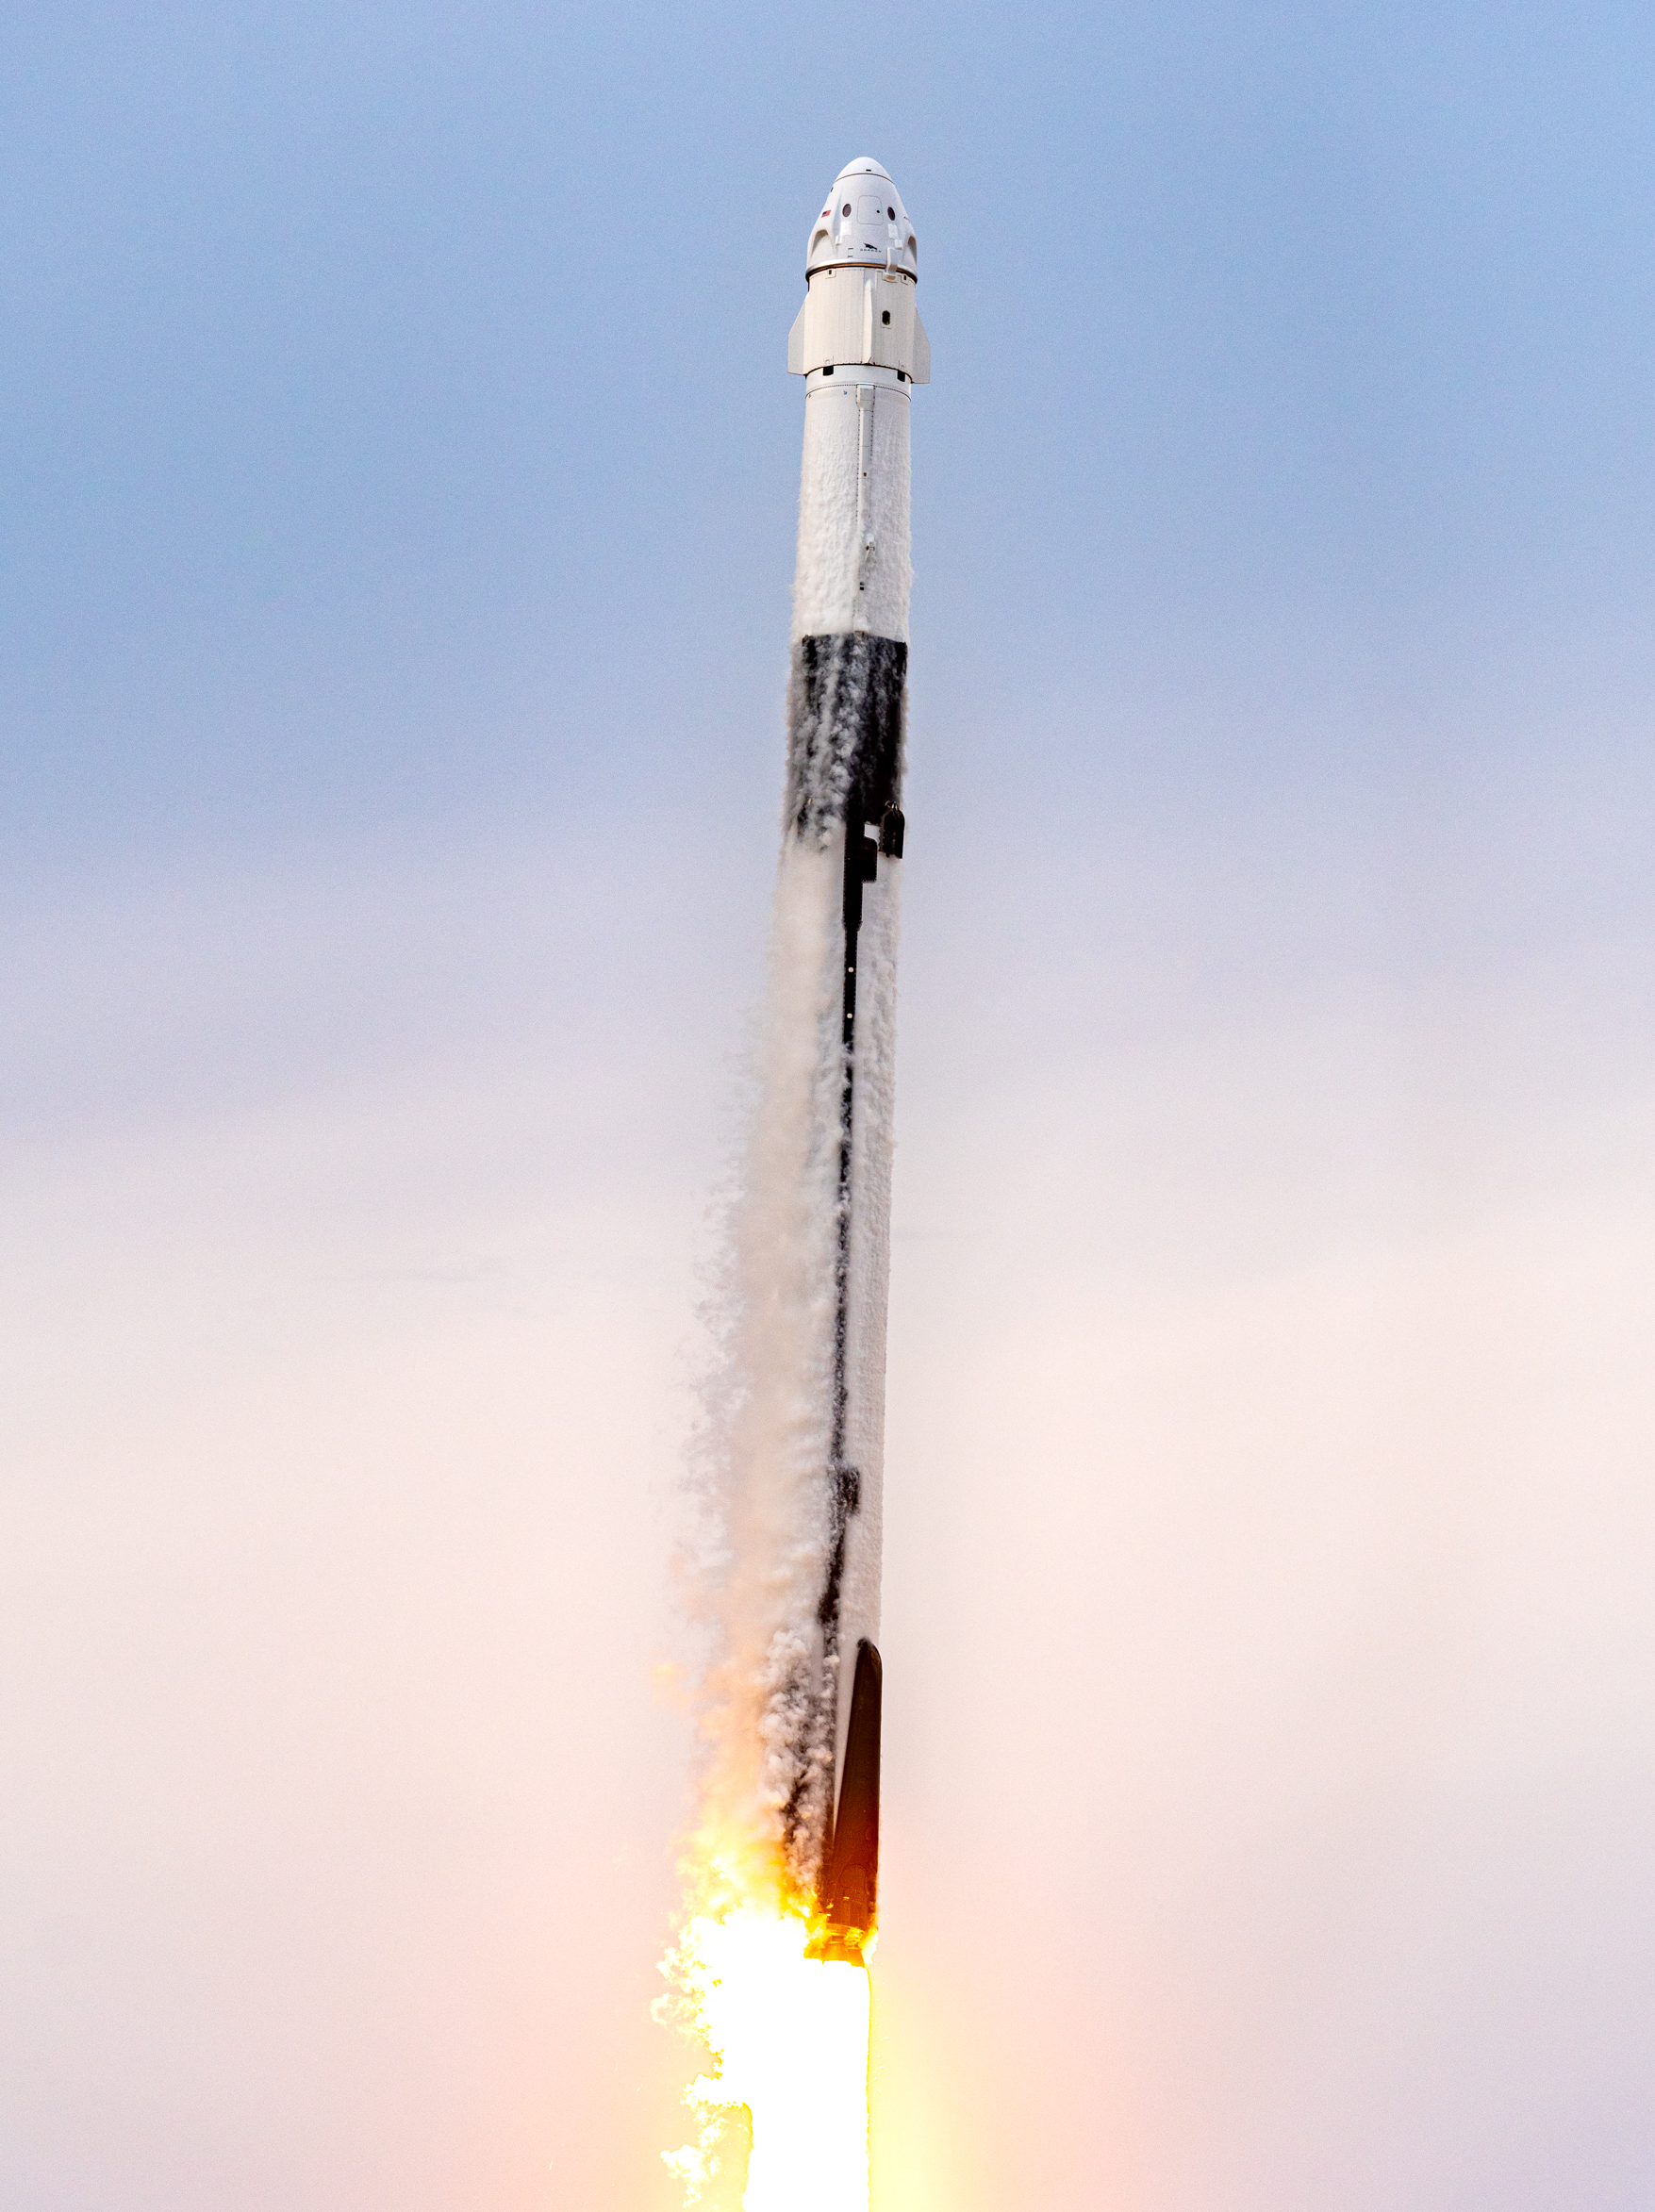 Saudi Astronauts in Falcon 9